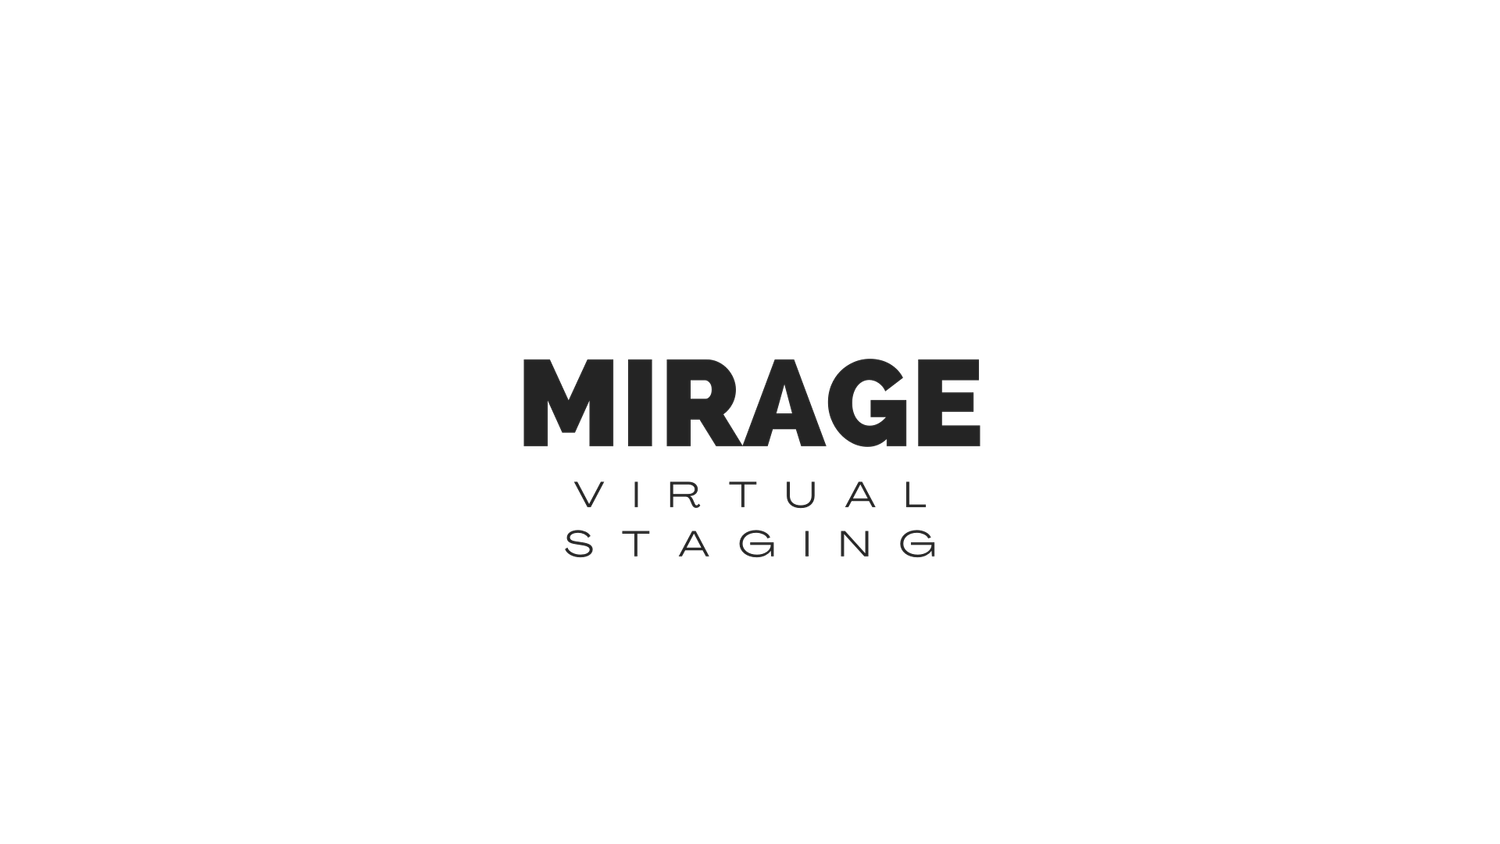 Mirage Virtual Staging